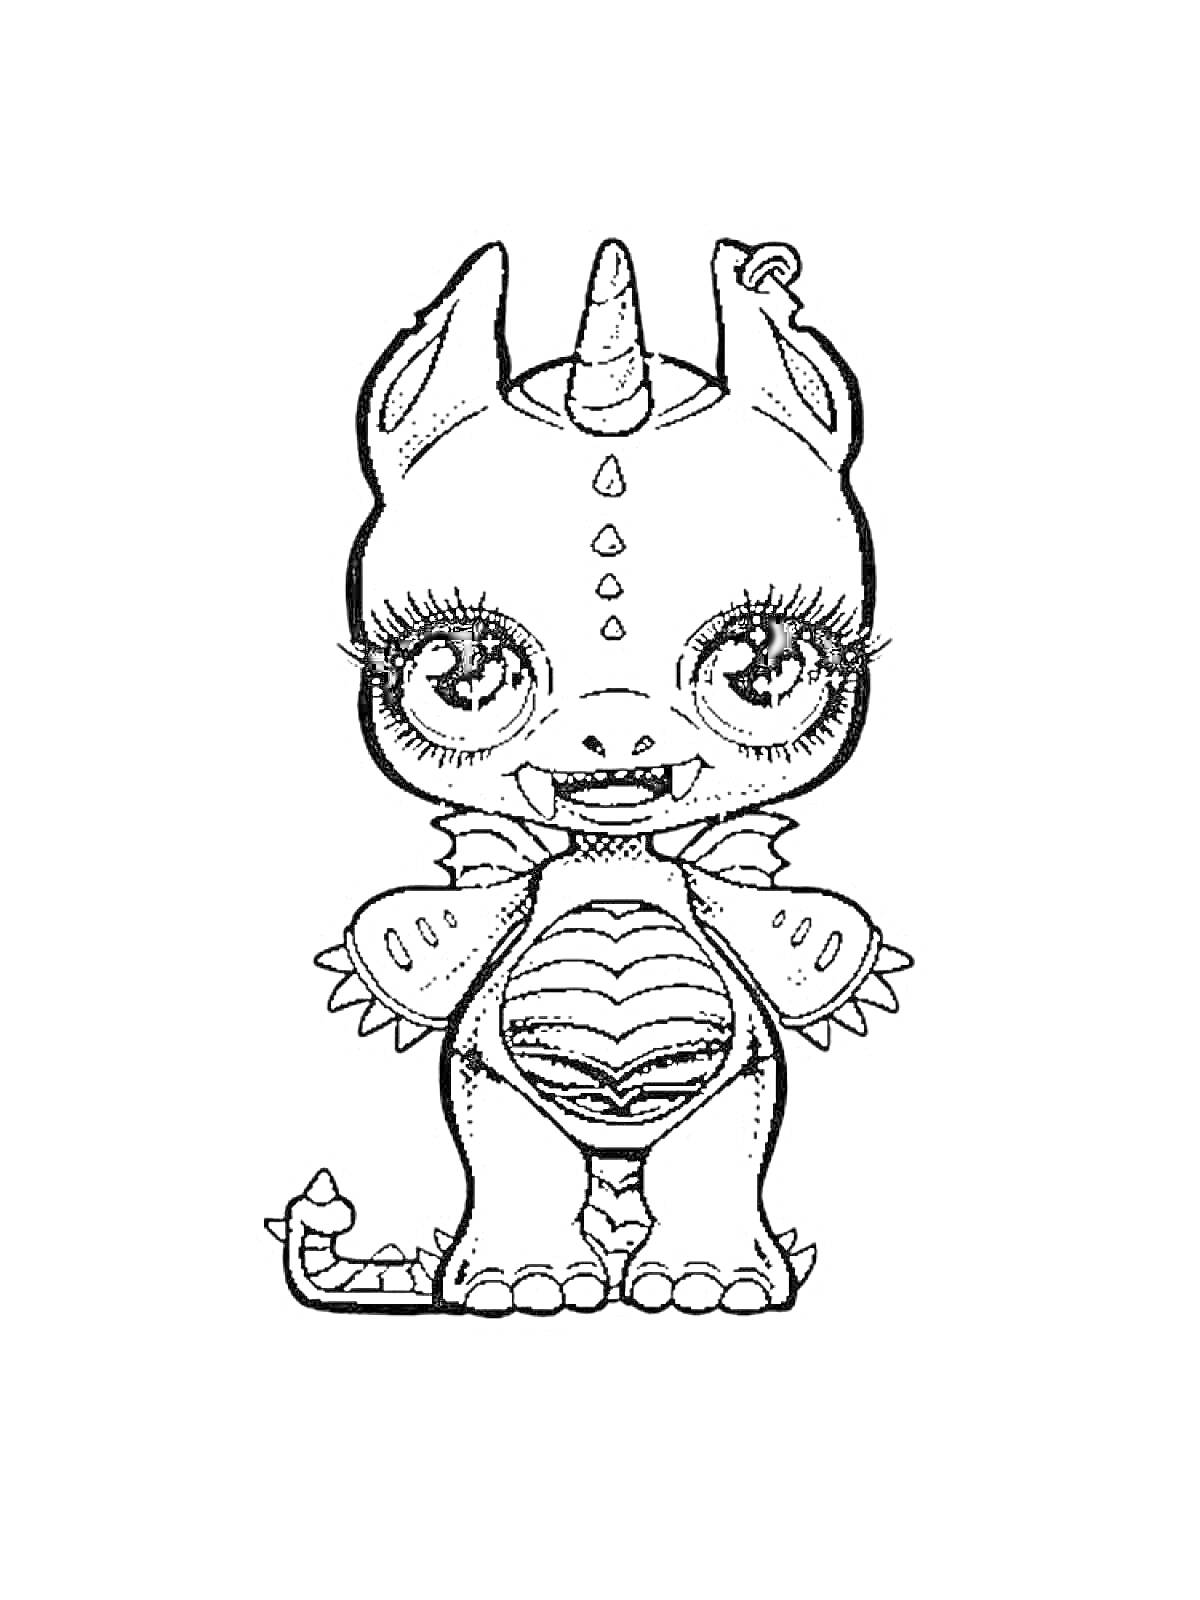 Раскраска Пупси Единорог в костюме дракона с рогом, крыльями, чешуйчатым животом и большими глазами